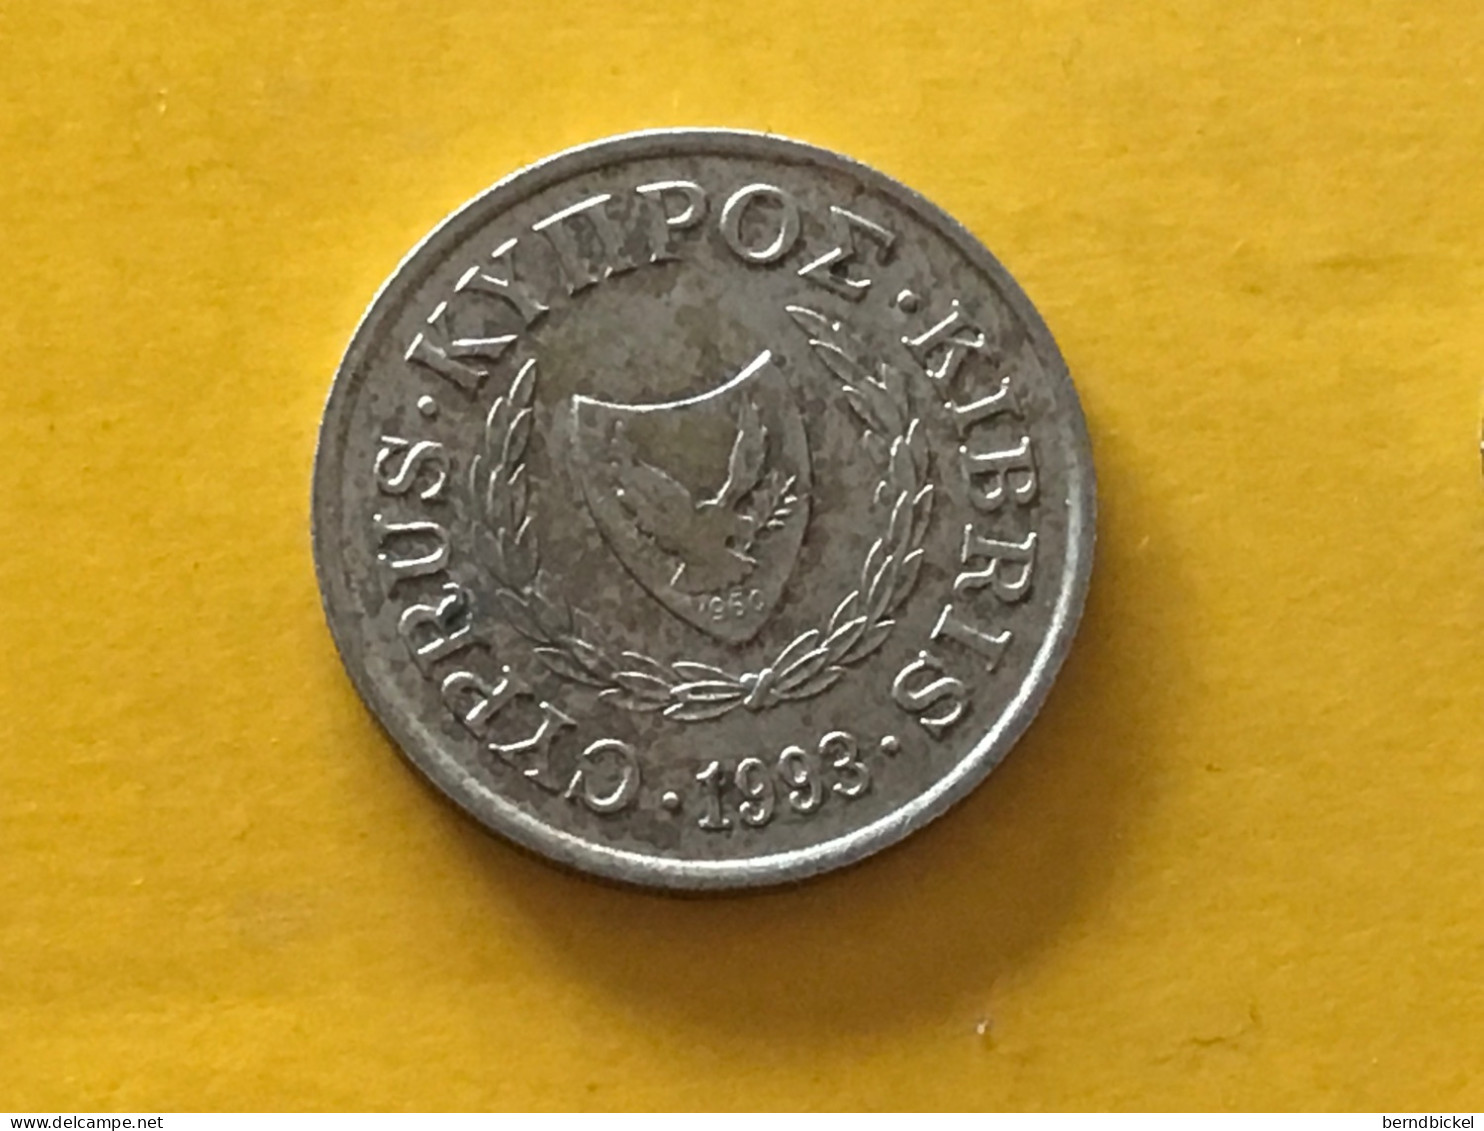 Münze Münzen Umlaufmünze Zypern 10 Cent 1993 - Cyprus